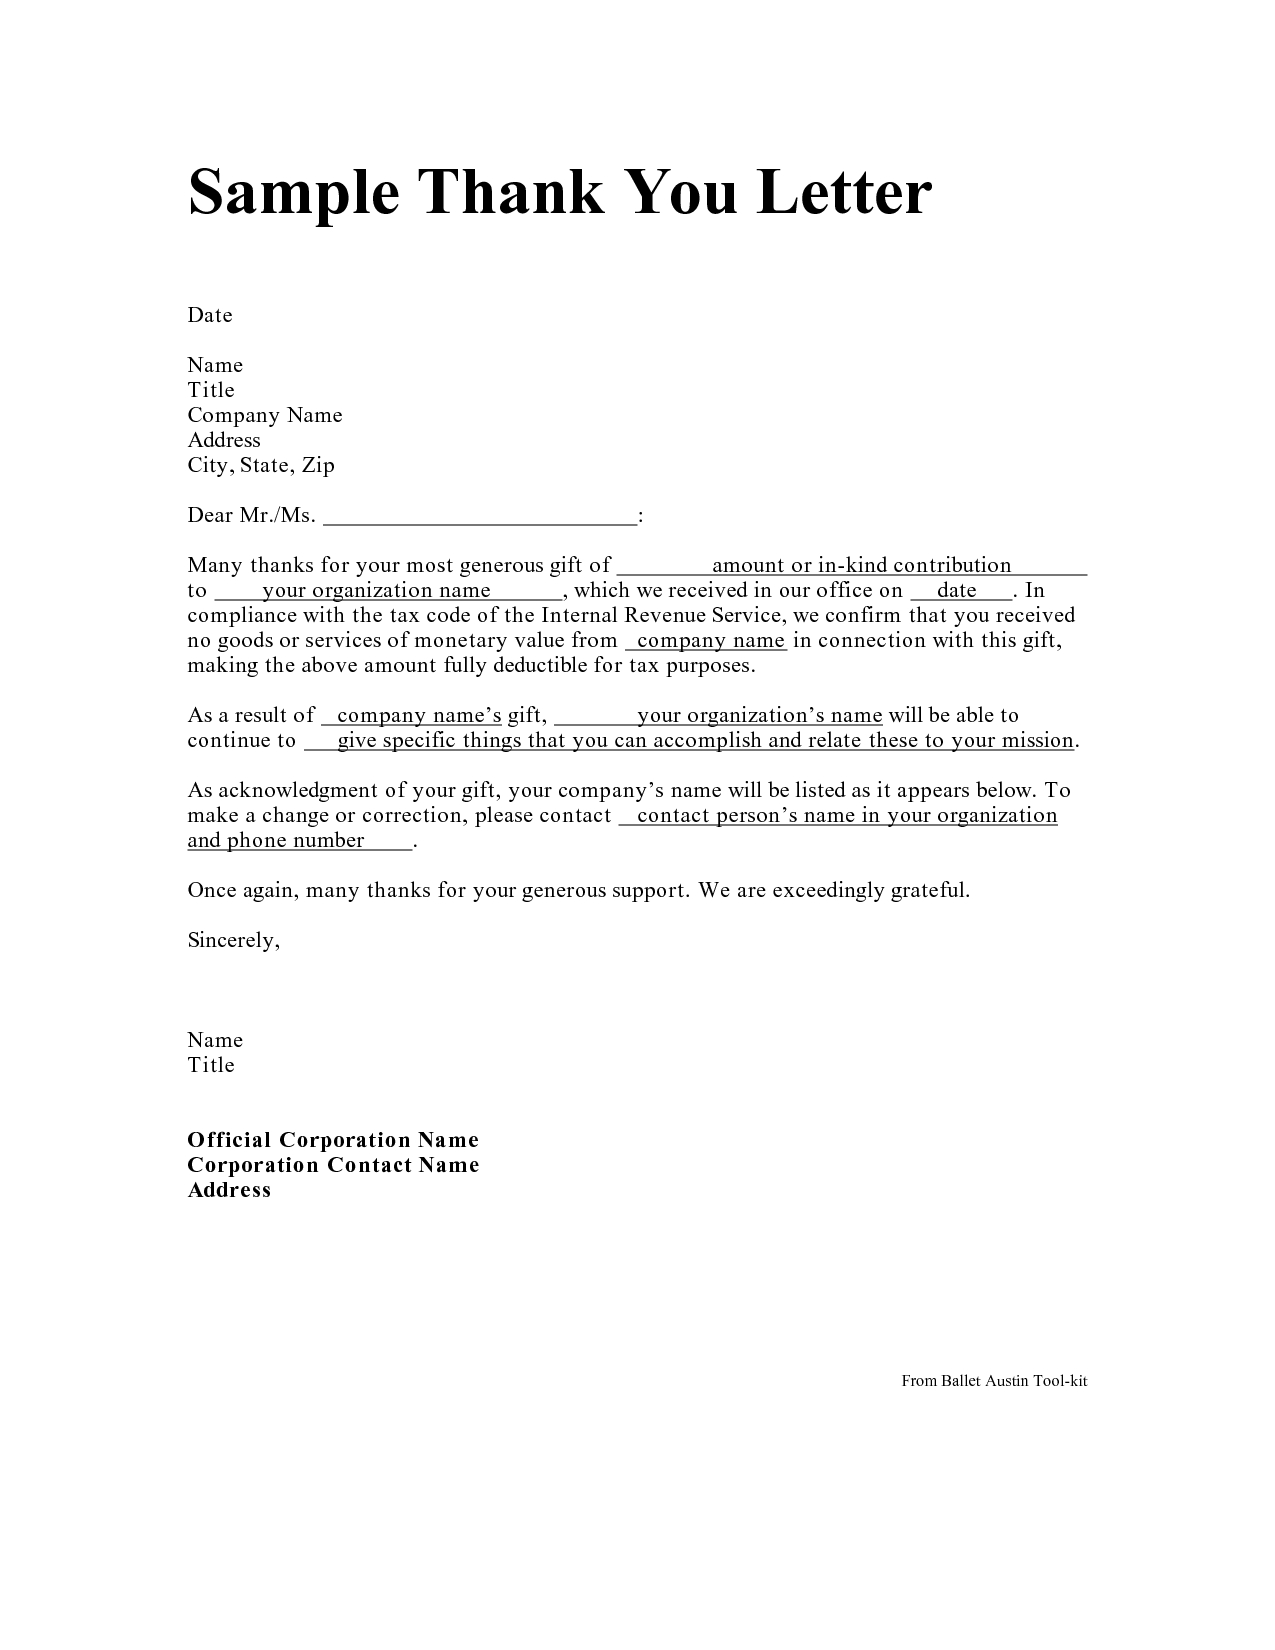 Non Profit Tax Deduction Letter Template - Personal Thank You Letter Personal Thank You Letter Samples